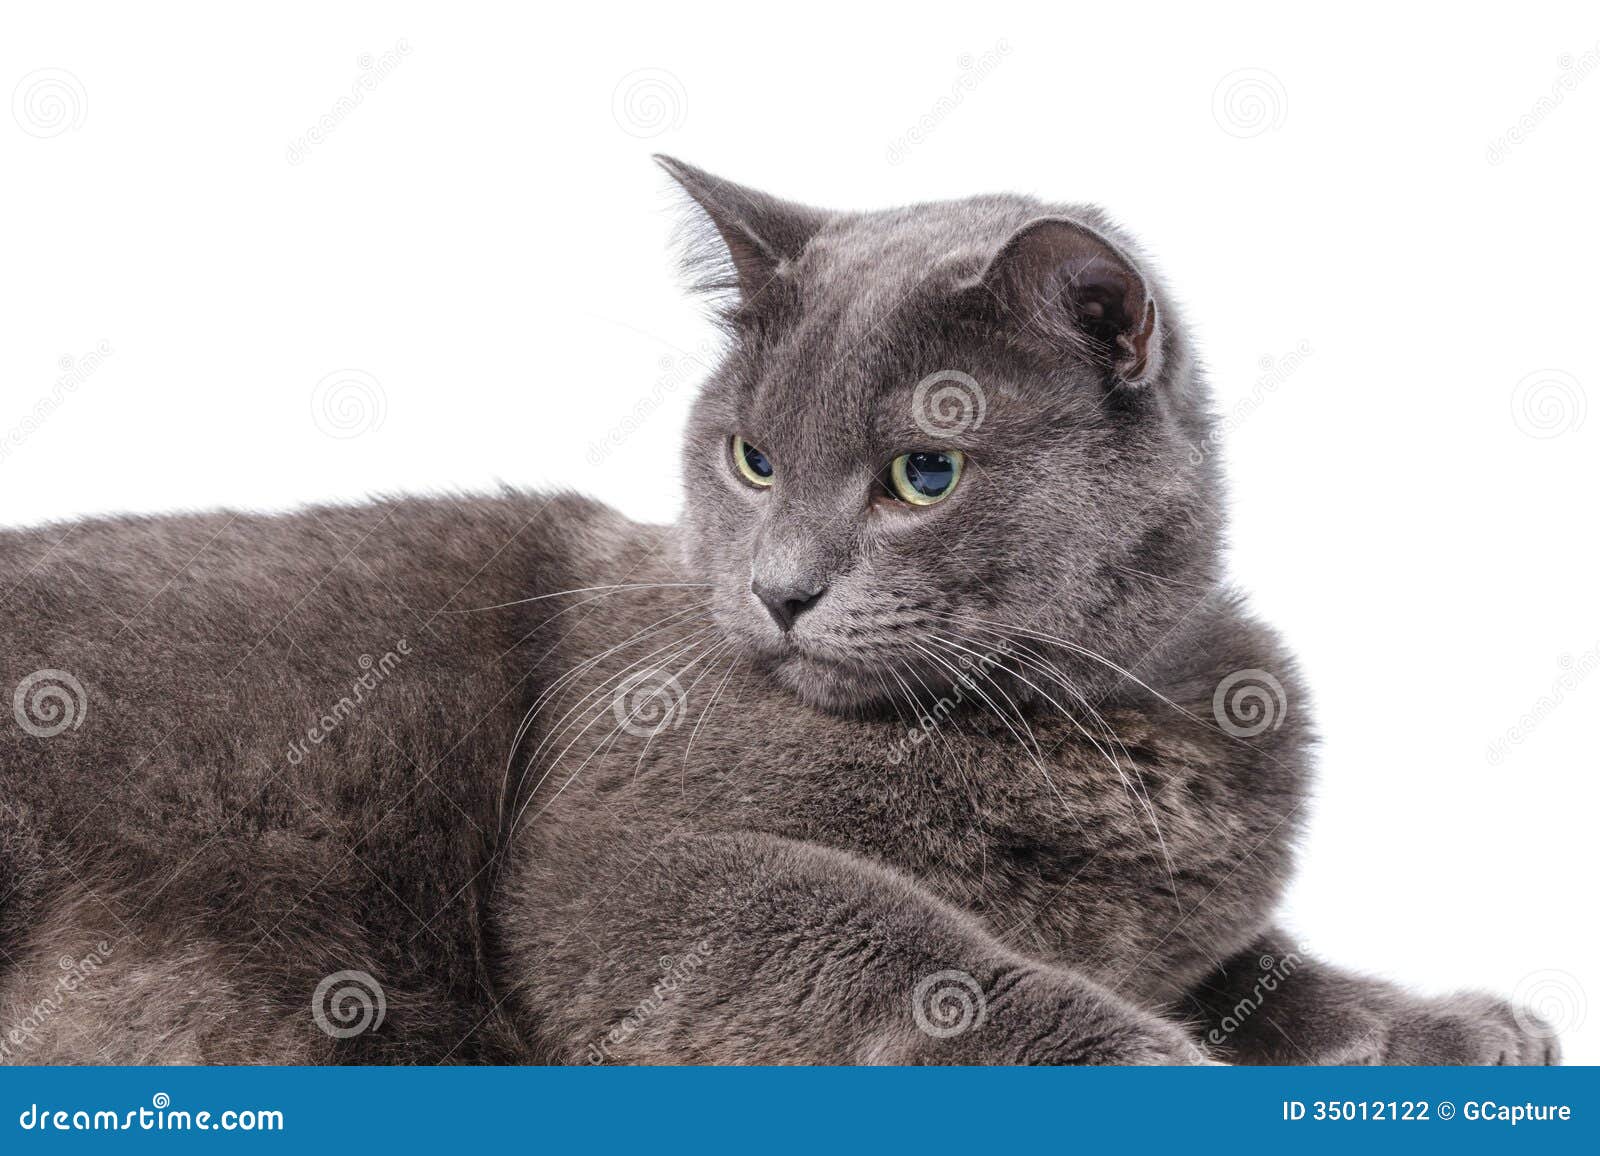 Hãy ngắm nhìn một chú mèo Anh lông ngắn với đôi mắt xanh lục tuyệt đẹp. Với vẻ đẹp trẻ trung và quyến rũ của mèo Anh lông ngắn, cộng với màu sắc trùng khớp tuyệt vời của đôi mắt, chúng ta có thể thấy rõ sự đẹp khác biệt của loài vật này.